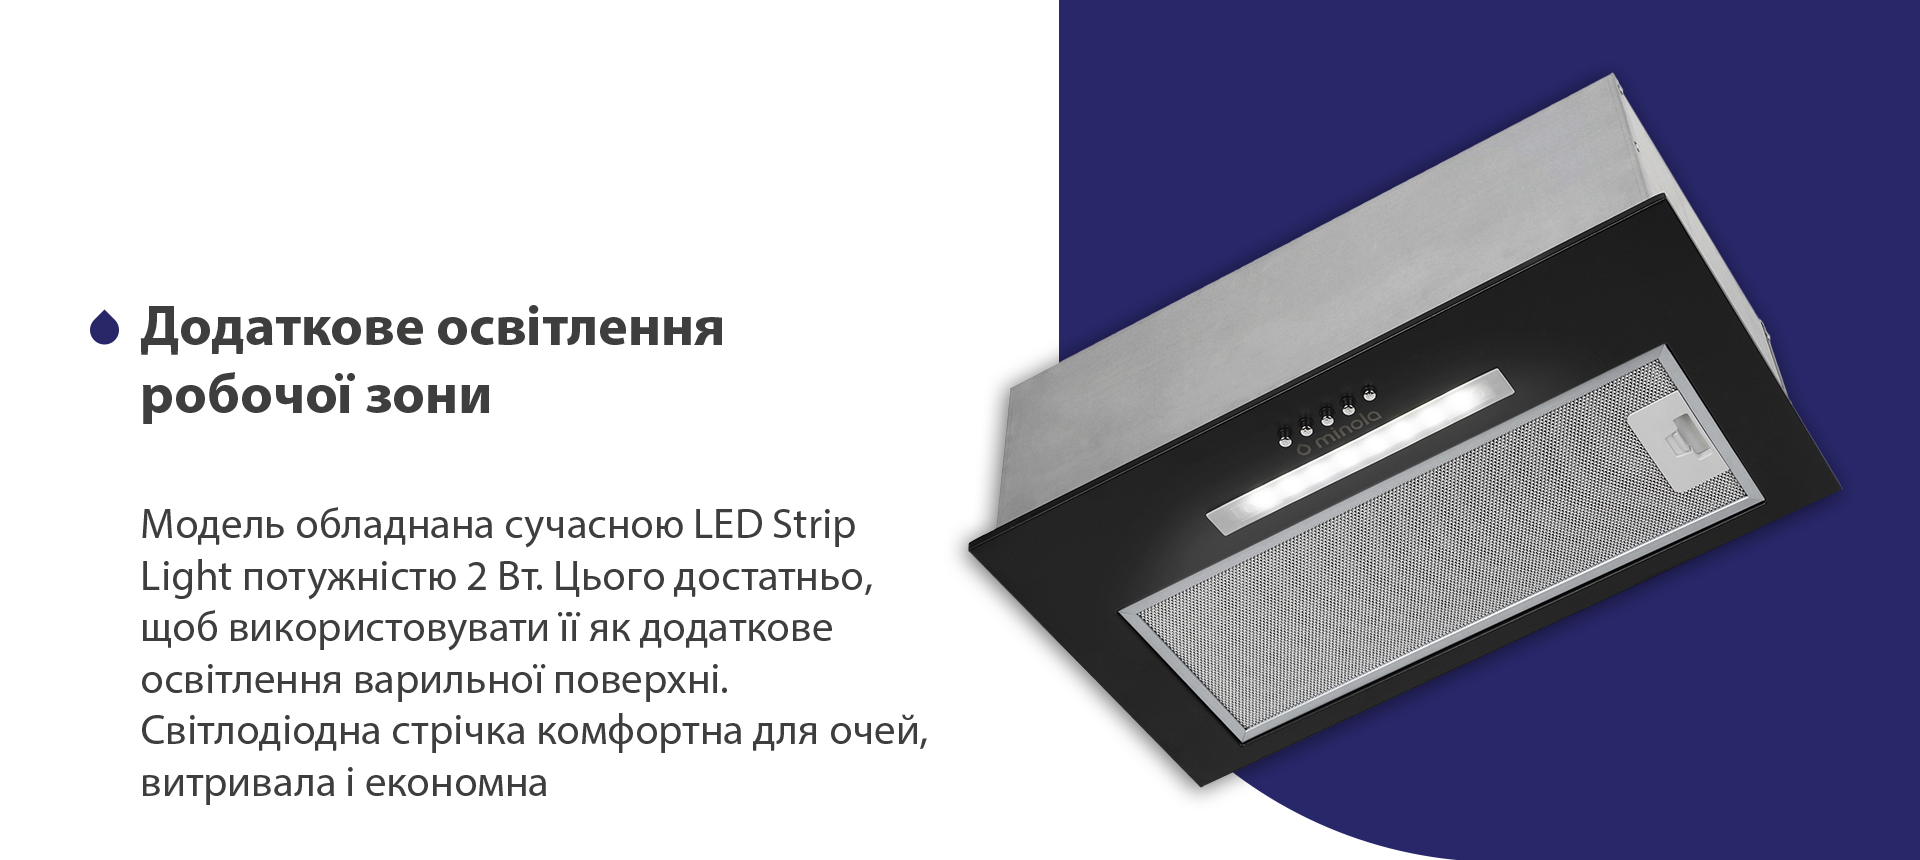 Модель обладнана сучасною LED Strip Light потужністю 2 Вт. Цього достатньо, щоб використовувати її як додаткове освітлення варильної поверхні. Світлодіодна стрічка комфортна для очей, витривала та економна